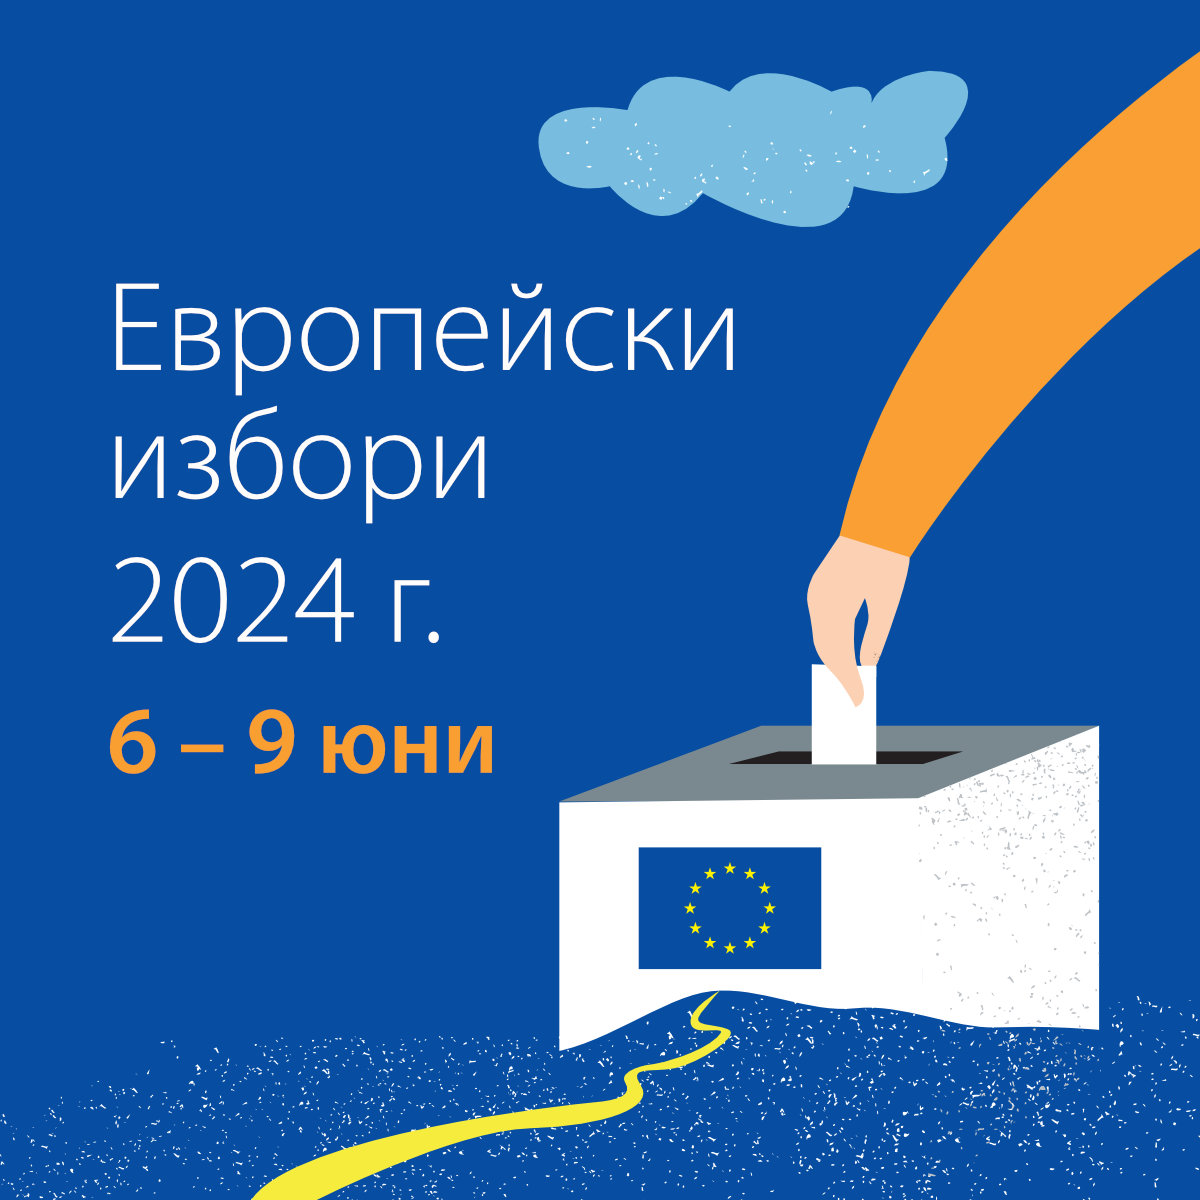 Европейски избори 2024 г. - Square.jpg